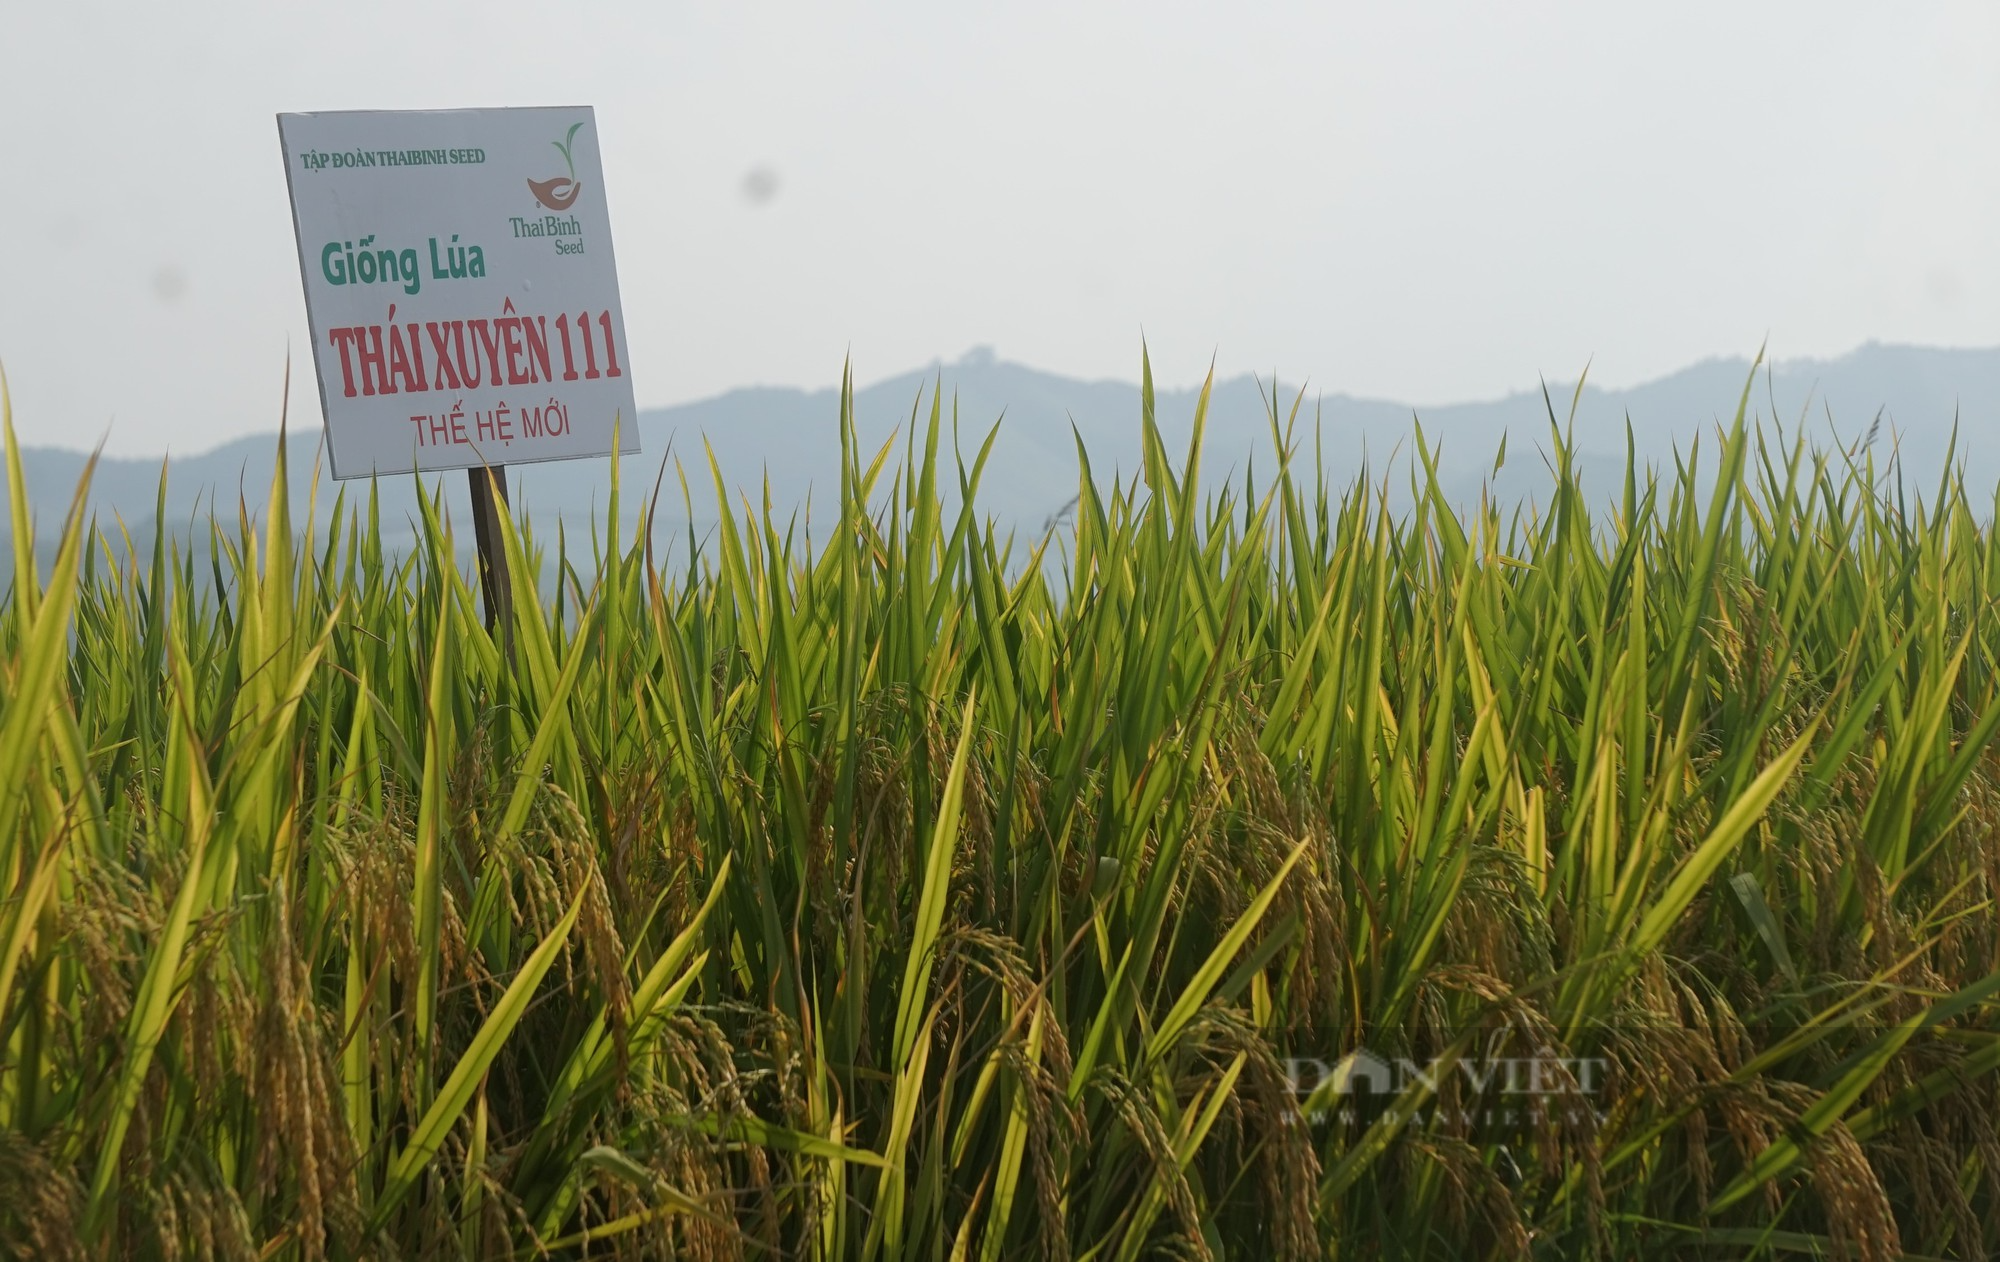 Bộ giống lúa của ThaiBinh Seed khẳng định chất lượng, cho năng suất vượt trội trên những cánh đồng Nghệ An - Ảnh 8.